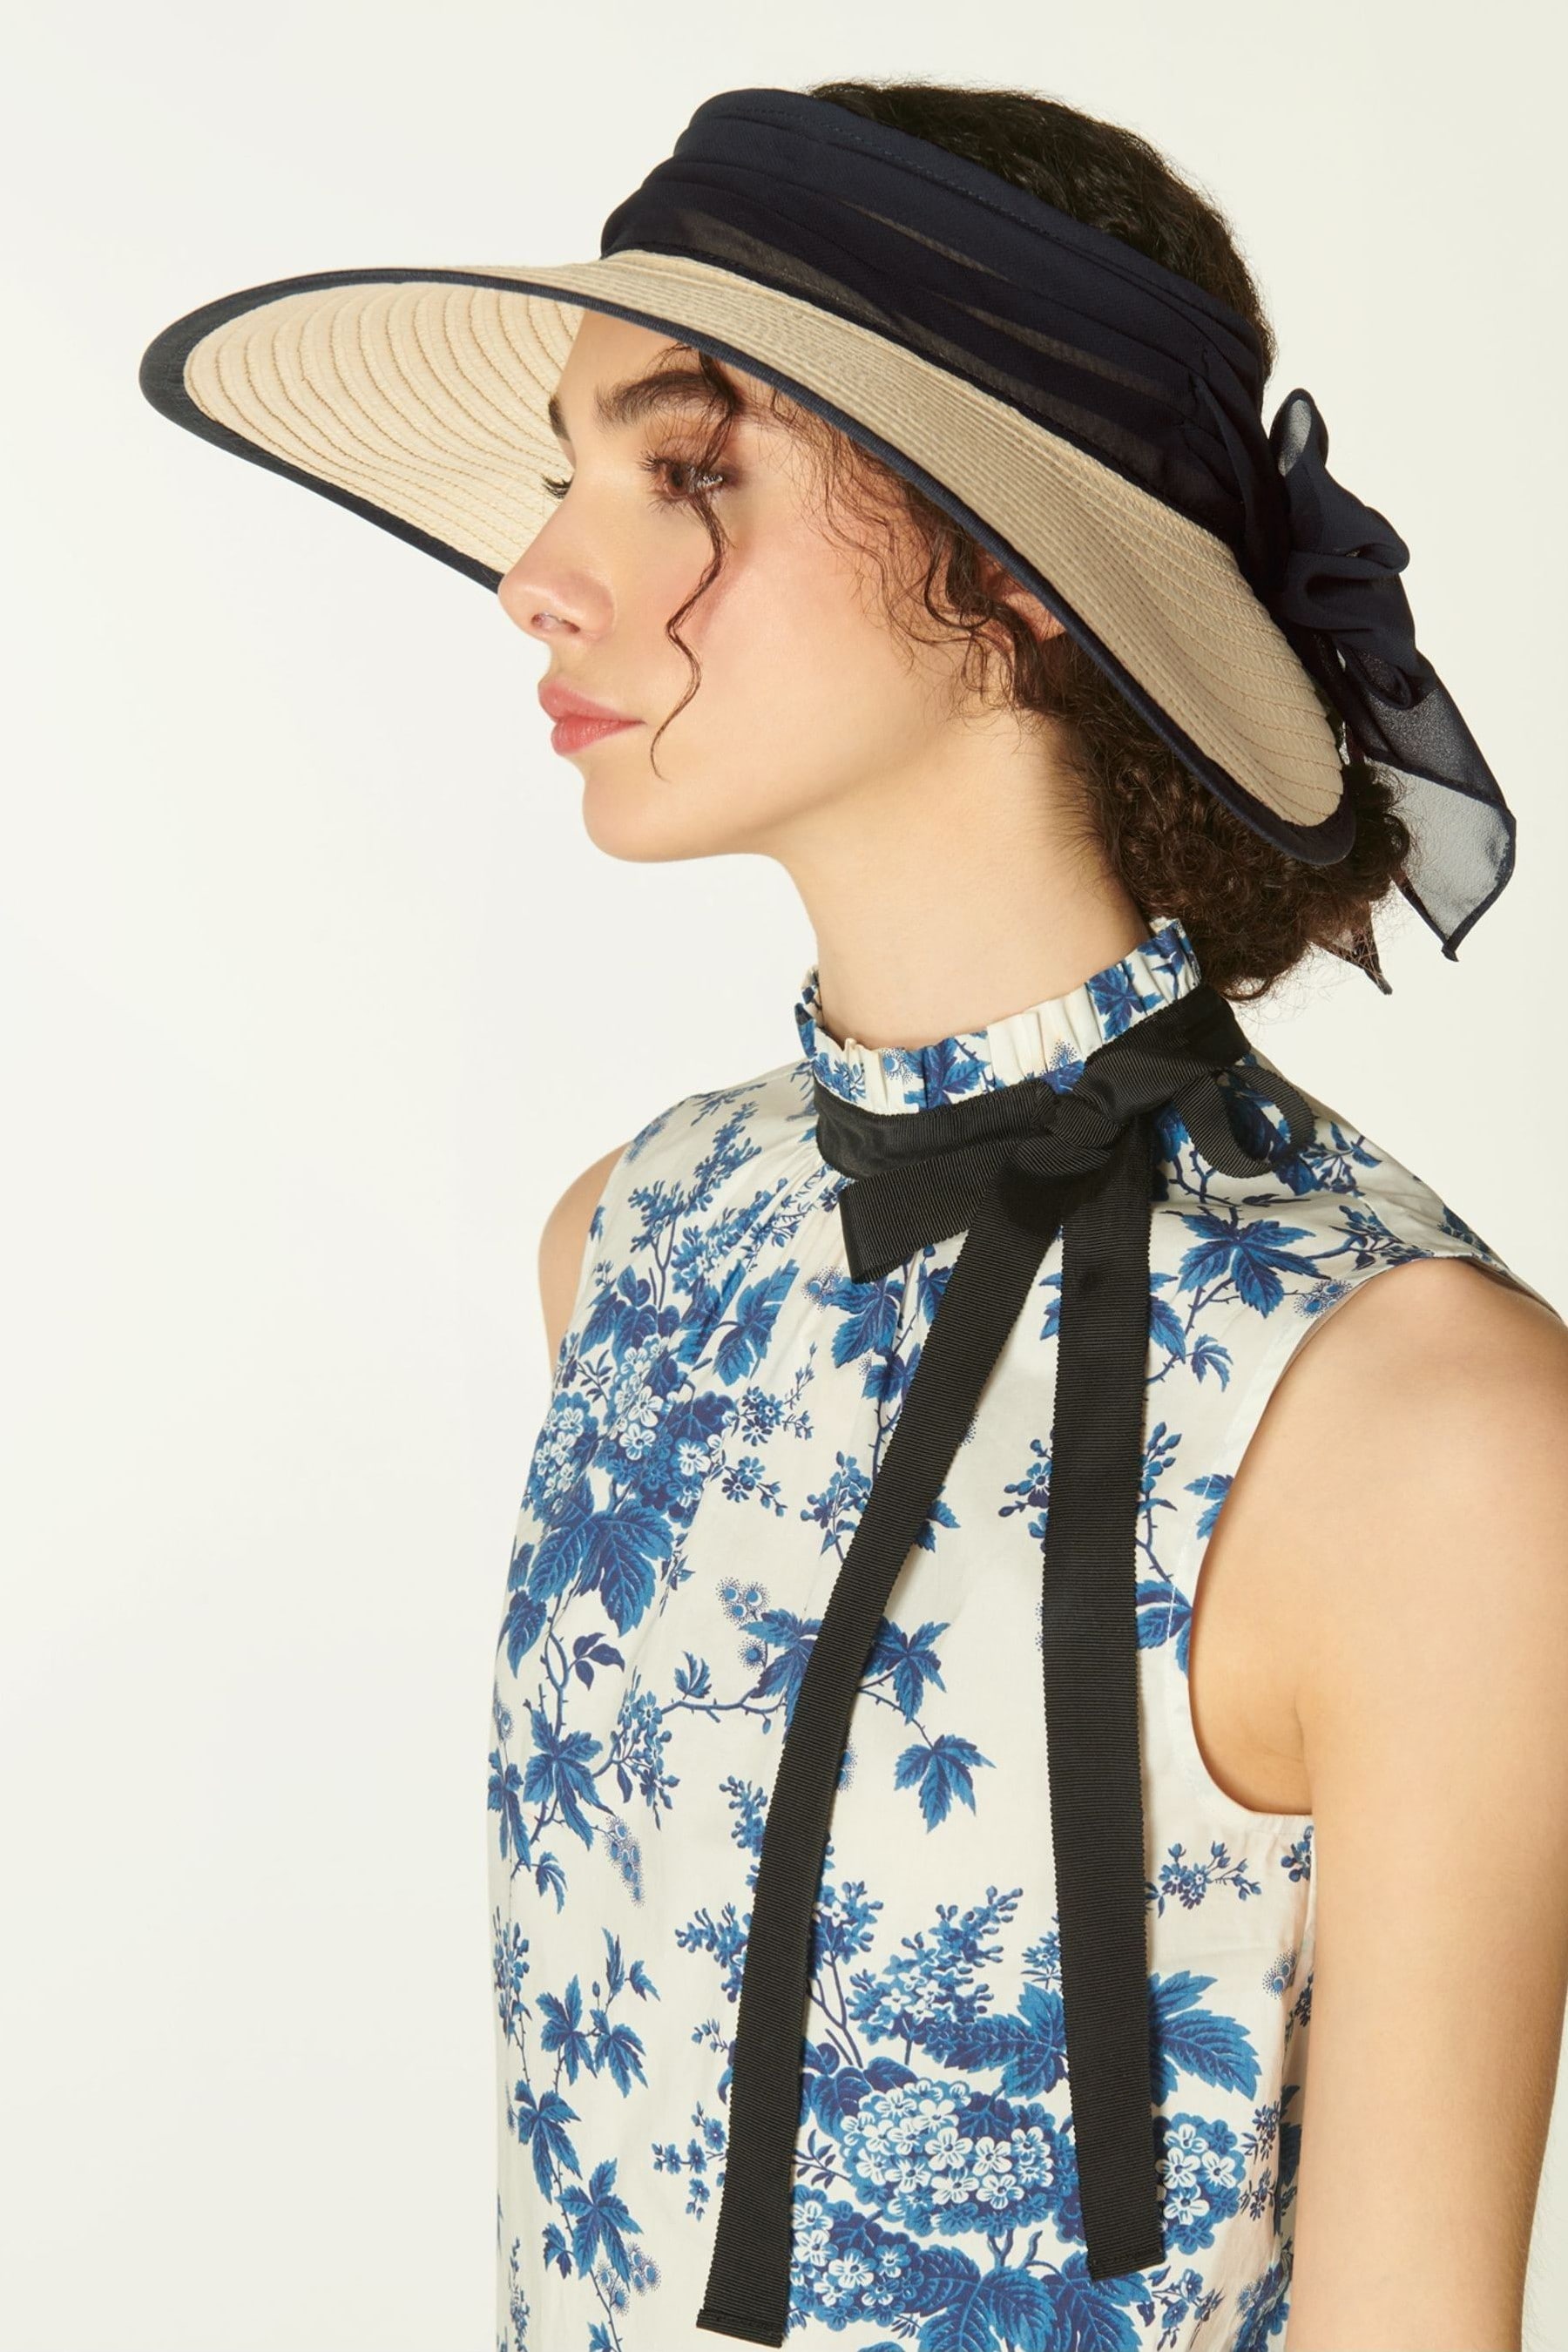 Buy LK Bennett Rosemary Large Straw Visor Hat from Next Kuwait